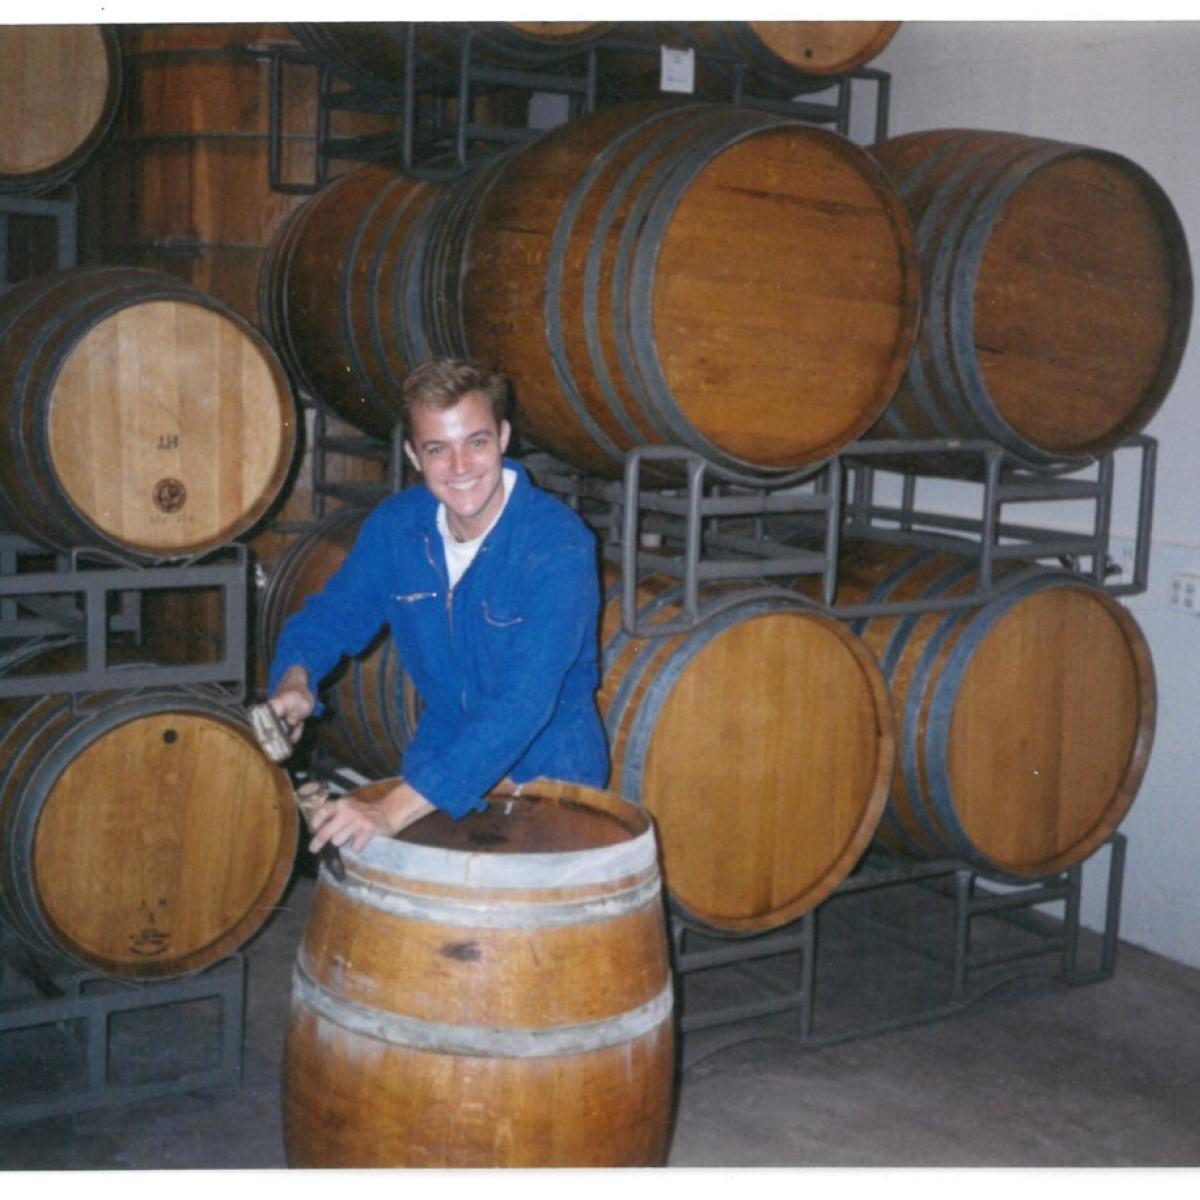 Greg in 1996